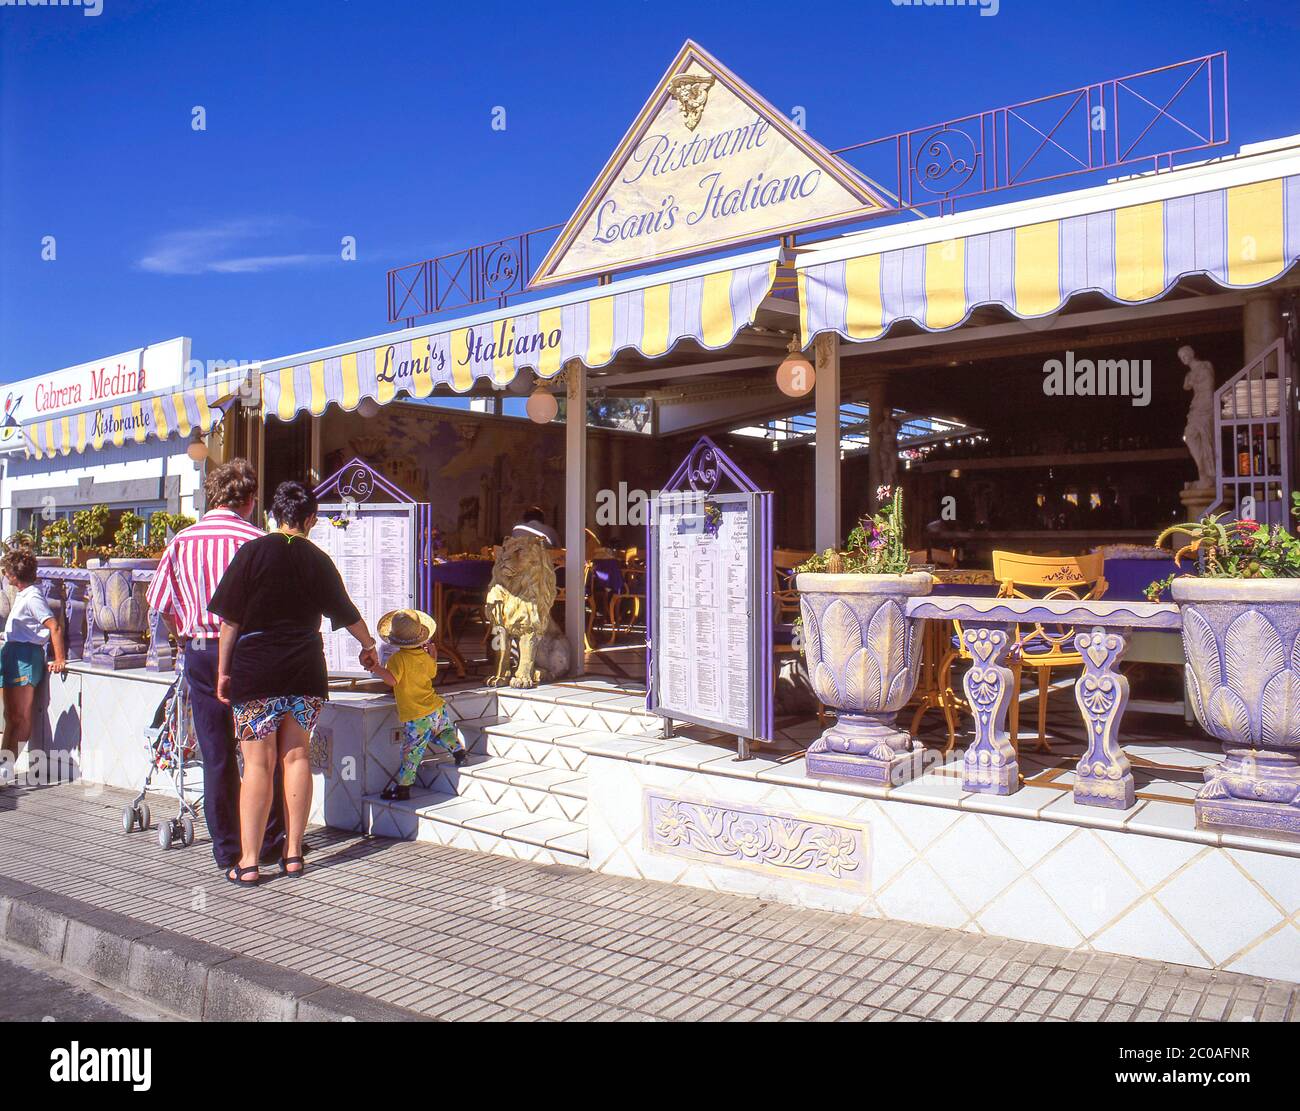 Lani's Italiano restorante, Las Playas, Puerto del Carmen, Lanzarote, Kanarische Inseln, Spanien Stockfoto